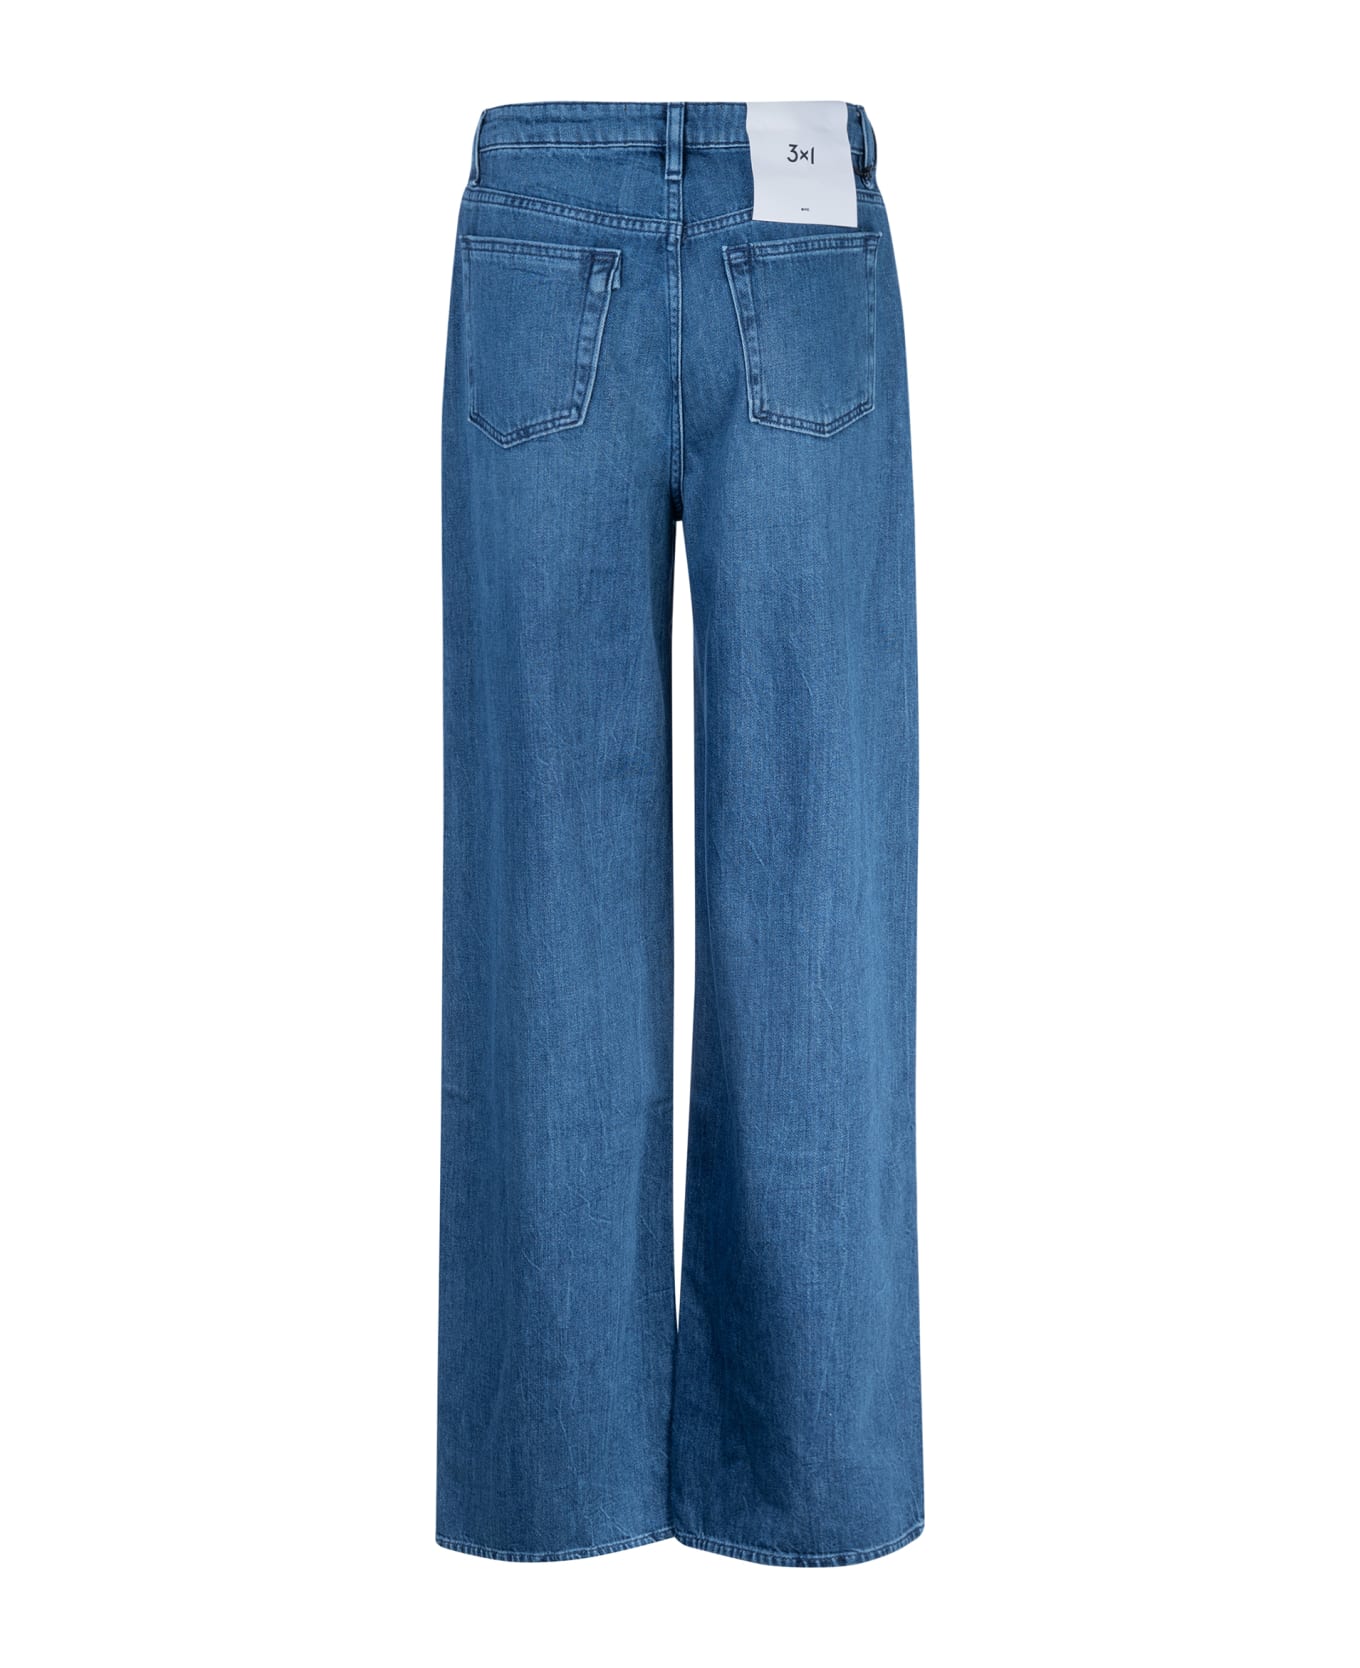 3x1 Flip Jeans - Midstone